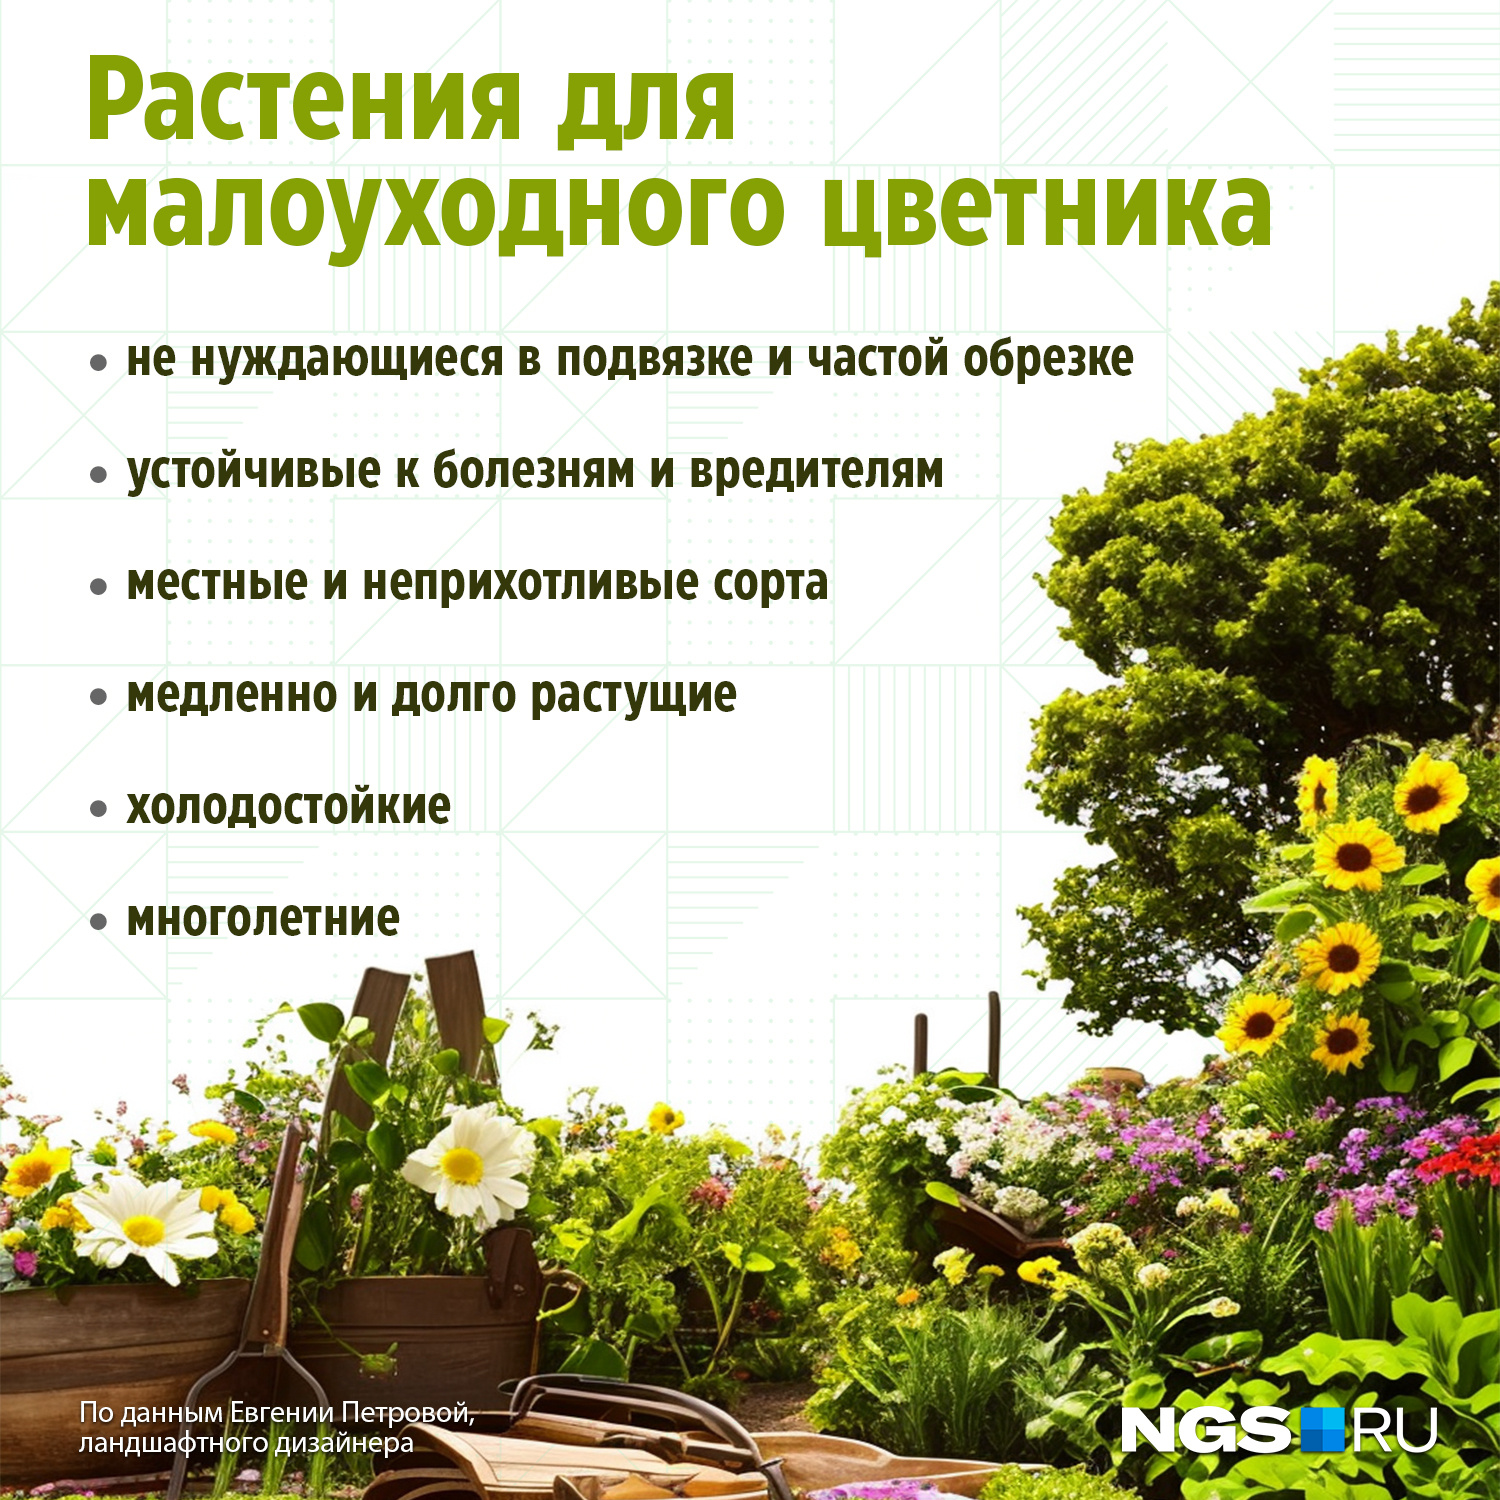 Сад и огород своими руками, цветы на даче, полезные советы дачникам и садоводам